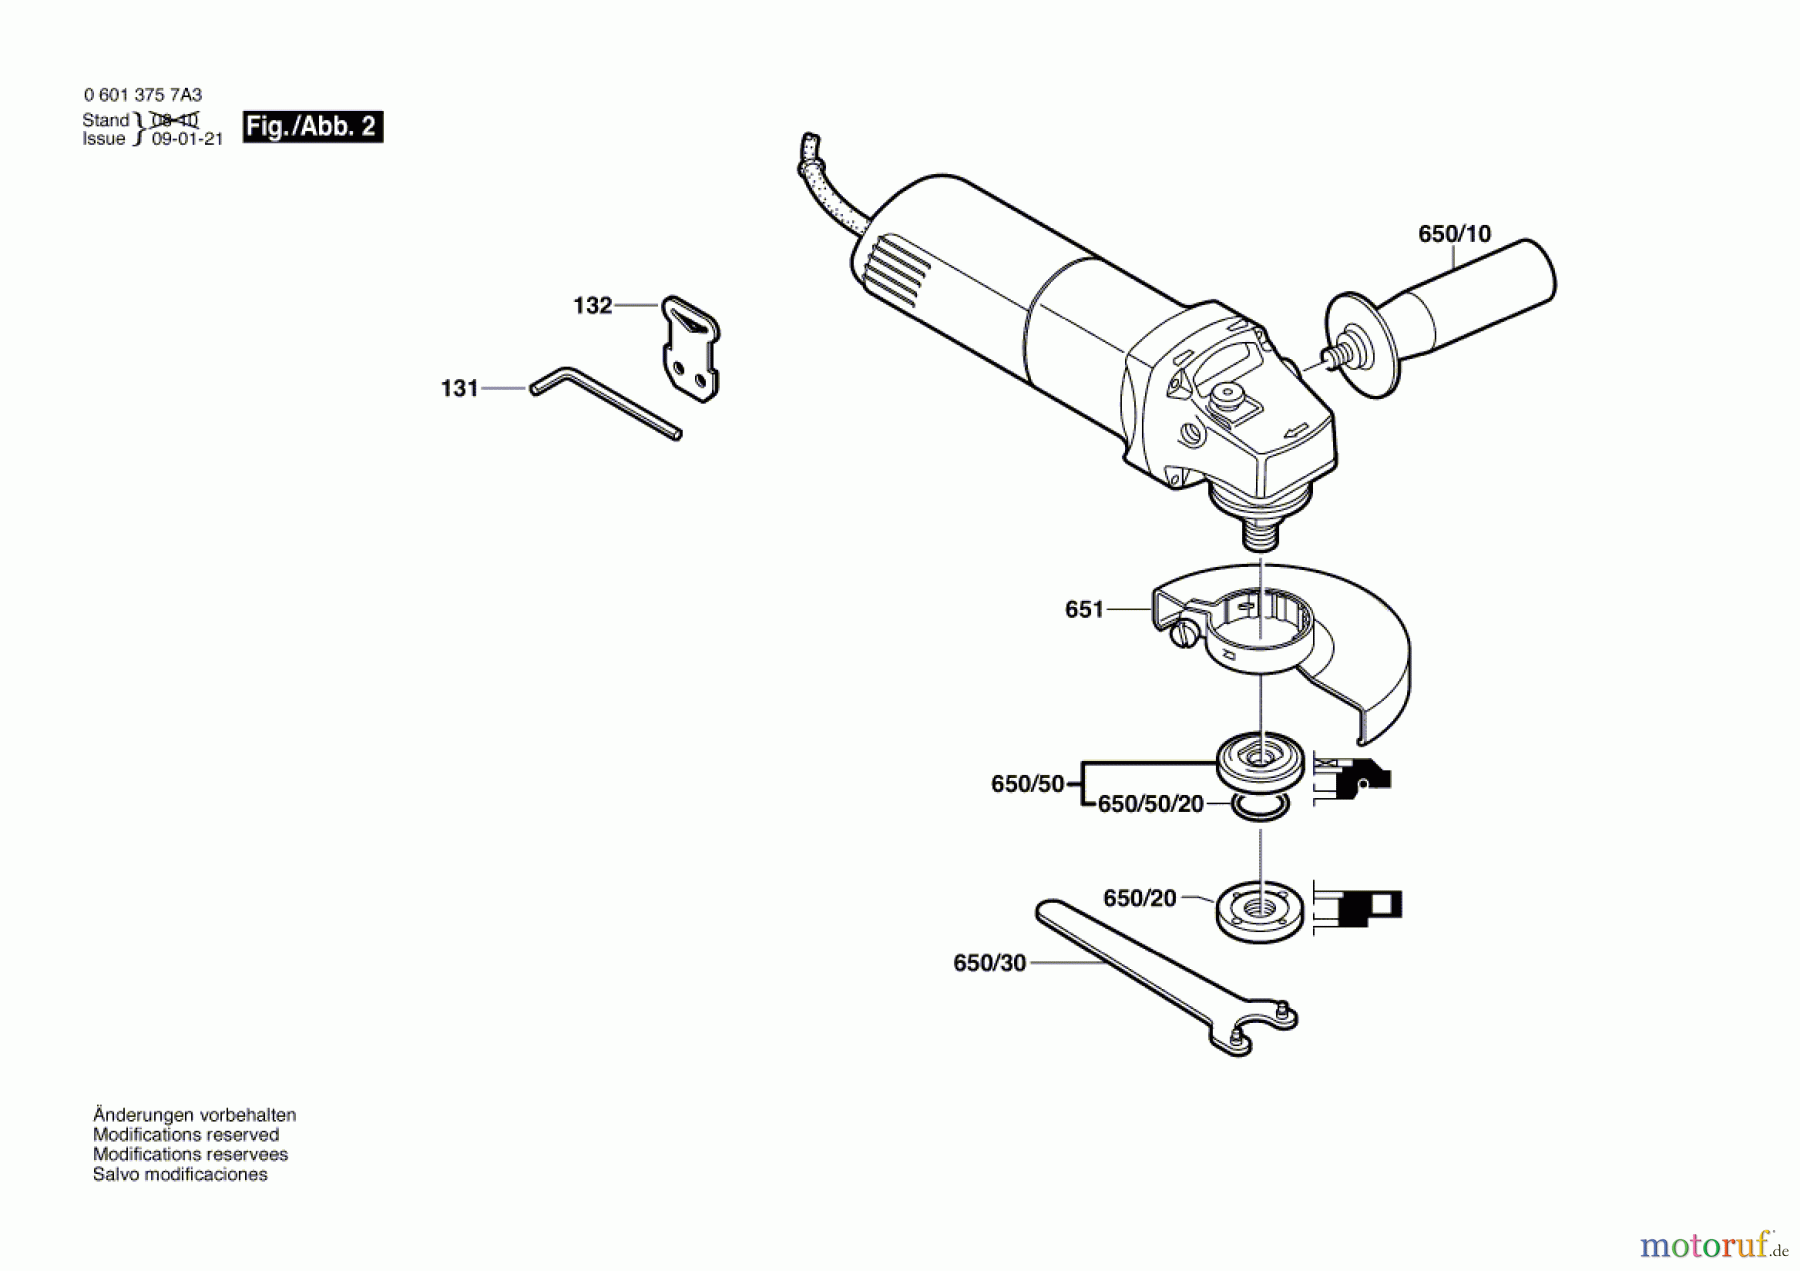  Bosch Werkzeug Winkelschleifer GWS 6-115 E Seite 2